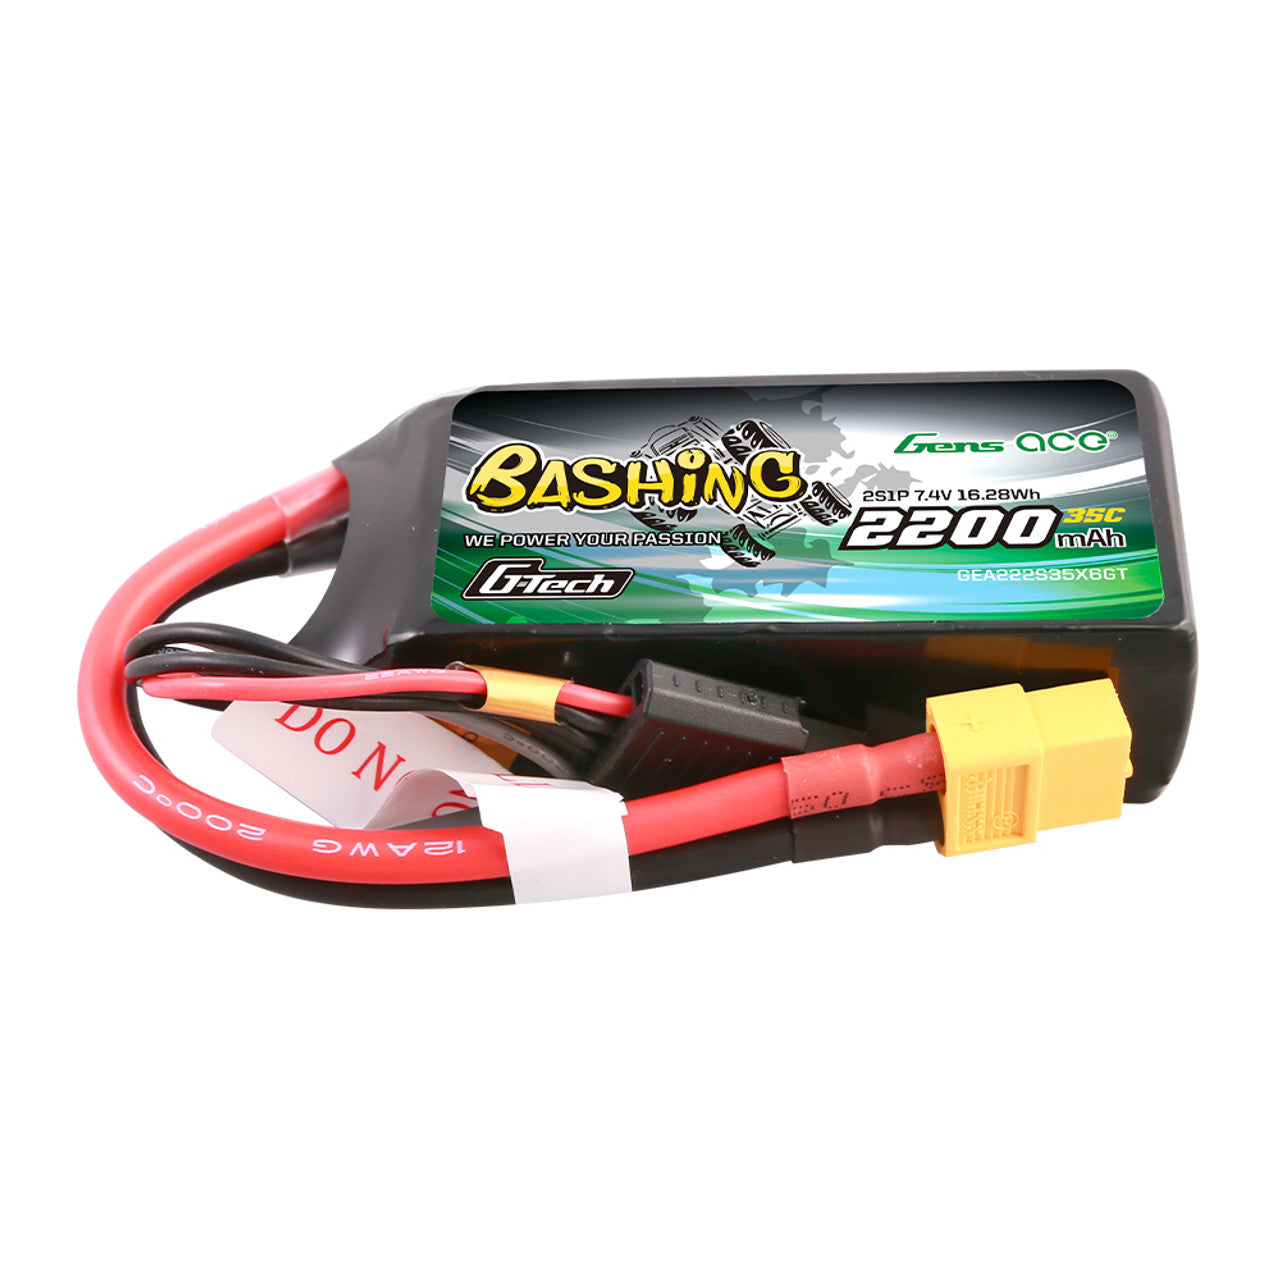 GEA223S35X6GT Gens Ace Bashing 11.1V 2200mAh 35C 3S1P g-tech batterie Lipo avec prise XT60